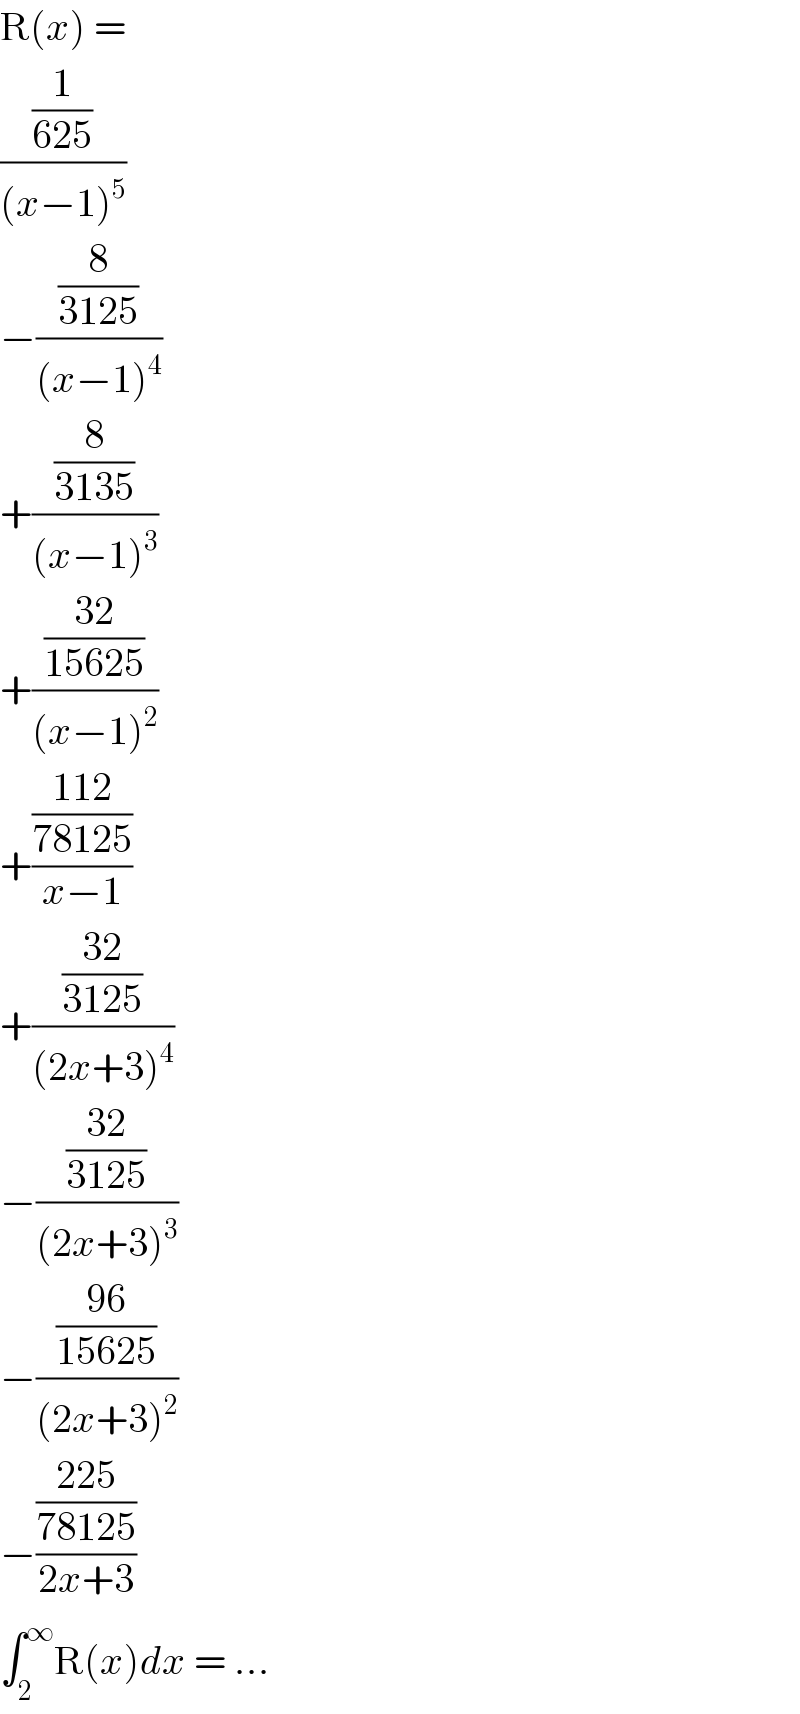 R(x) =   ((1/(625))/((x−1)^5 ))  −((8/(3125))/((x−1)^4 ))  +((8/(3135))/((x−1)^3 ))  +(((32)/(15625))/((x−1)^2 ))  +(((112)/(78125))/(x−1))  +(((32)/(3125))/((2x+3)^4 ))  −(((32)/(3125))/((2x+3)^3 ))  −(((96)/(15625))/((2x+3)^2 ))  −(((225)/(78125))/(2x+3))  ∫_2 ^∞ R(x)dx = ...  